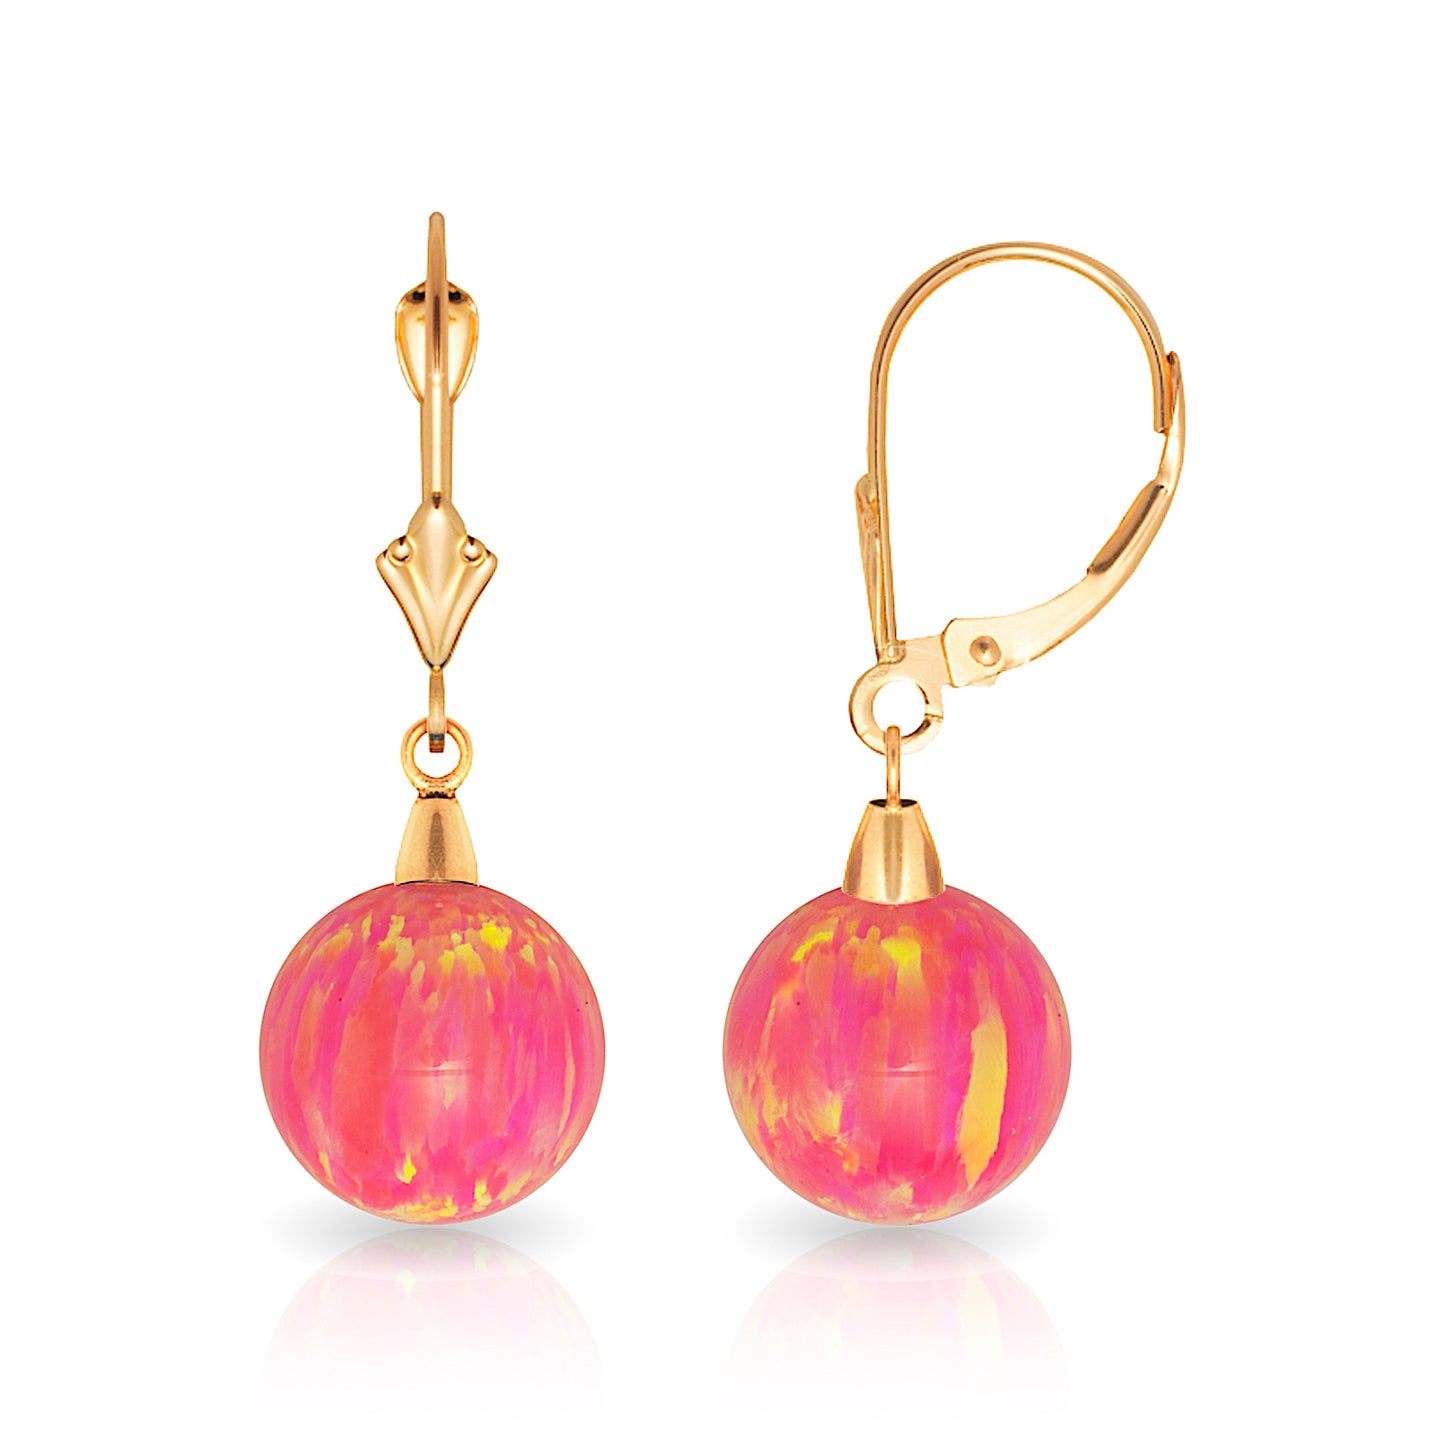 Minimalist 14K Solid Gold Bright Pink Opal Drop Earrings